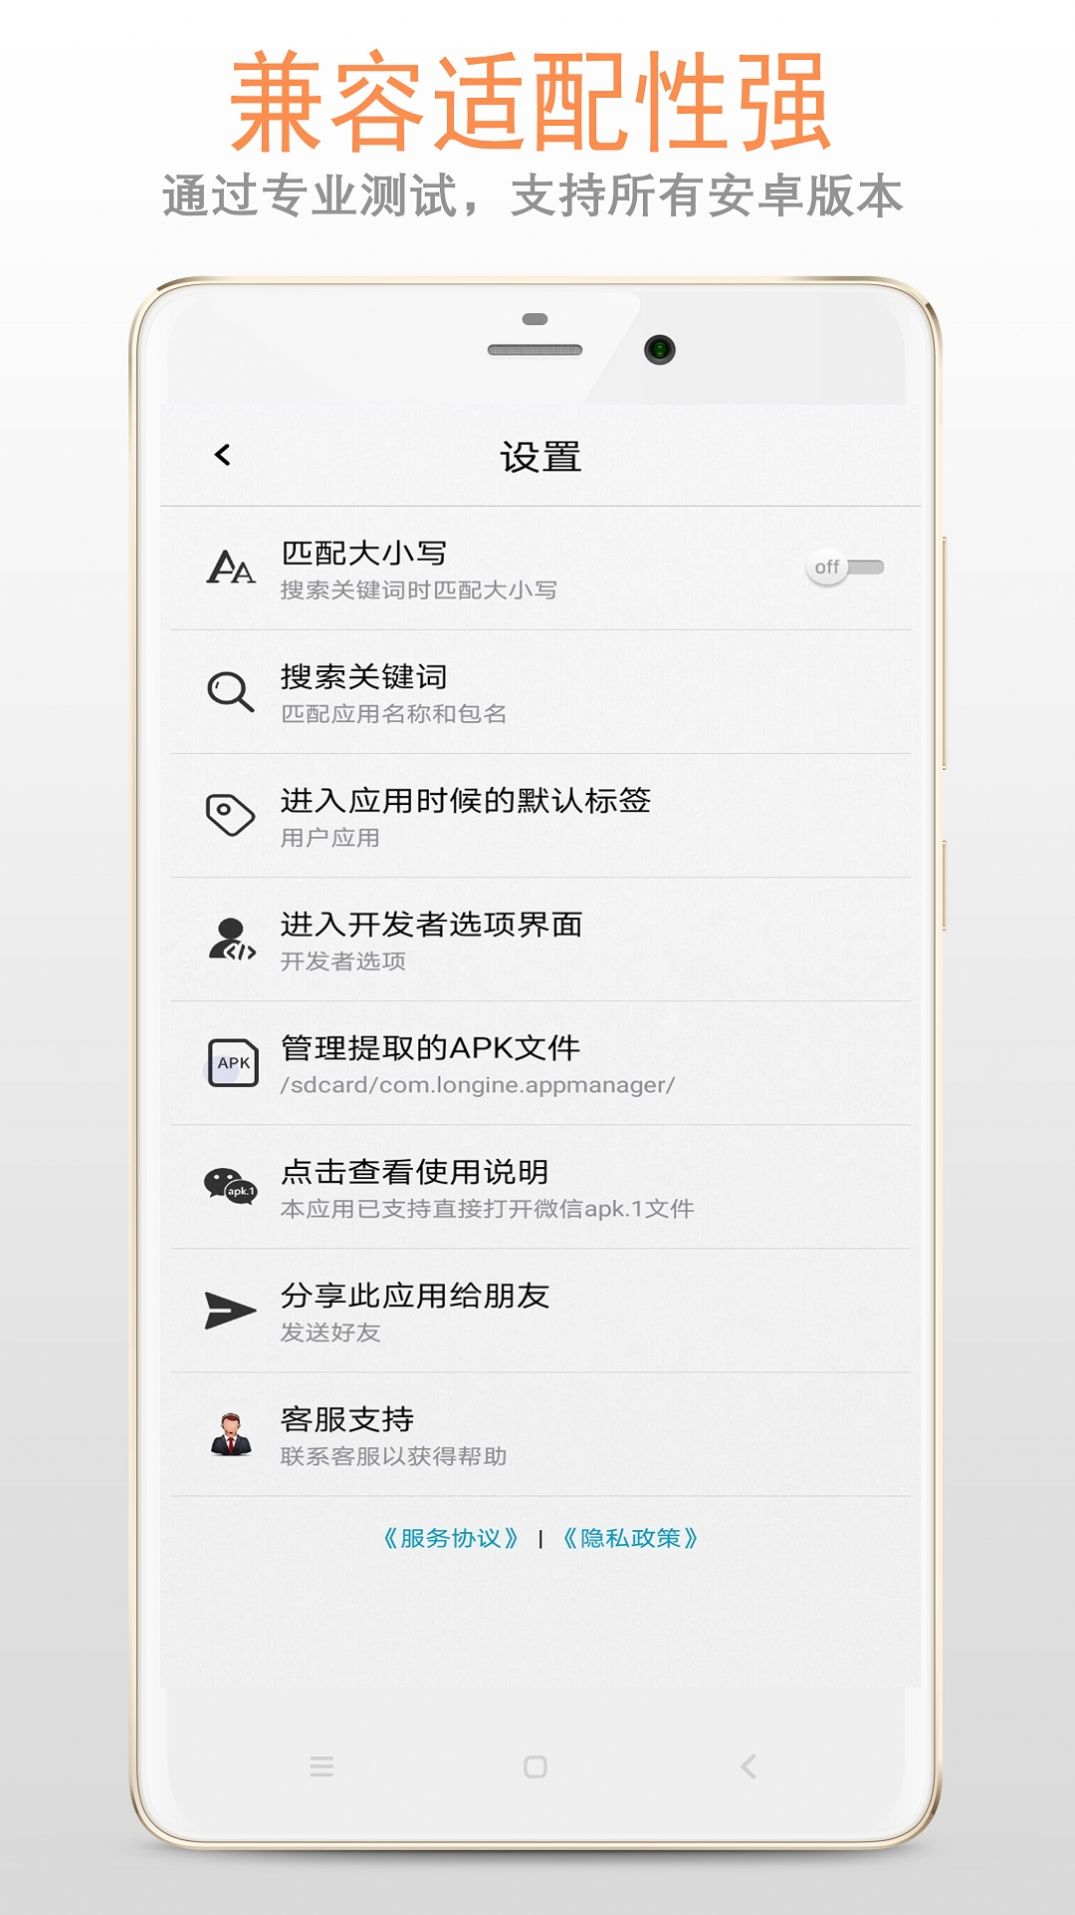 小龙apk应用管理器app手机版下载图片1